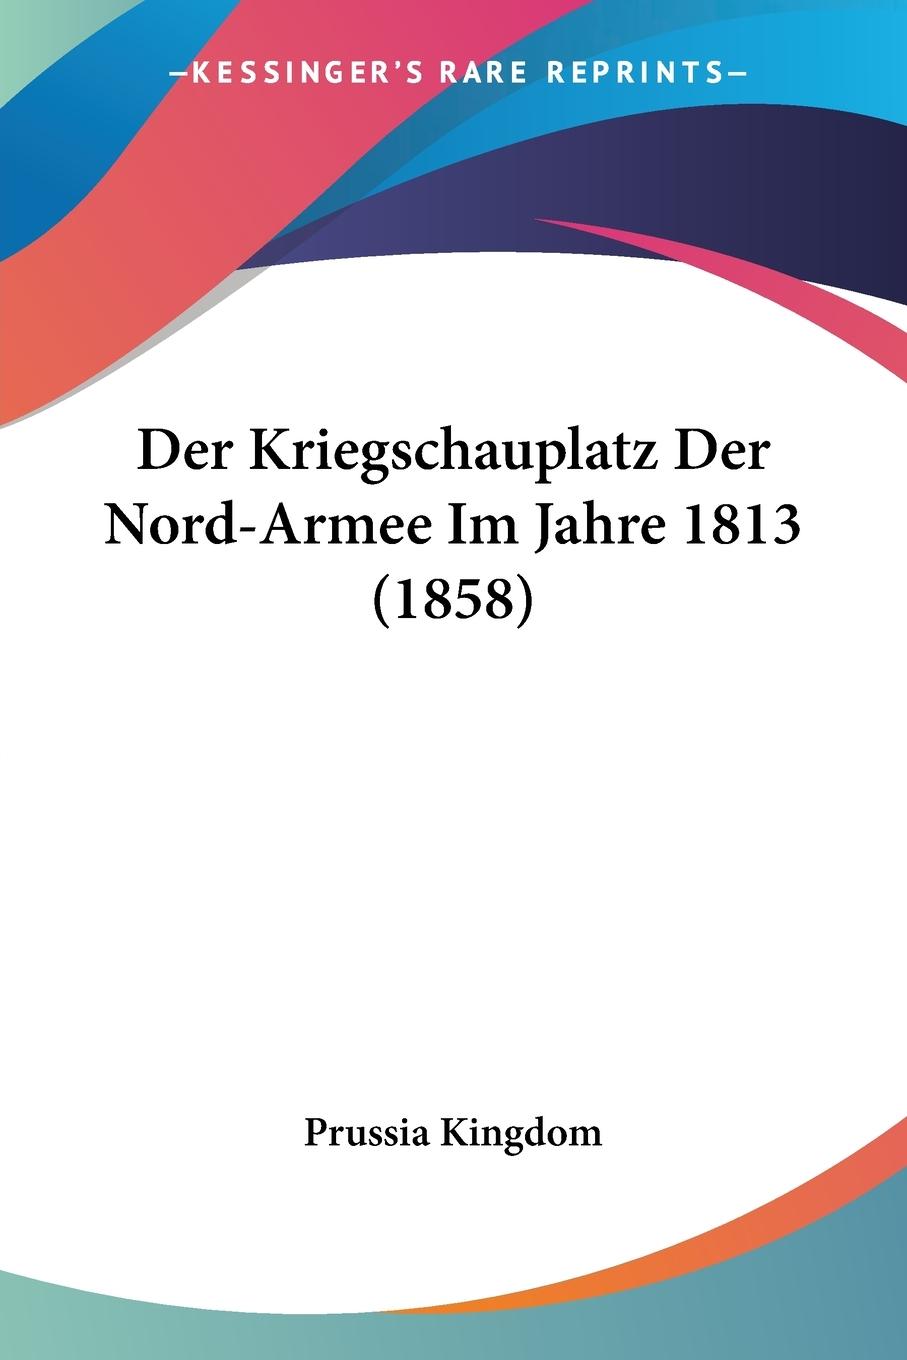 Der Kriegschauplatz Der Nord-Armee Im Jahre 1813 (1858) - Prussia Kingdom